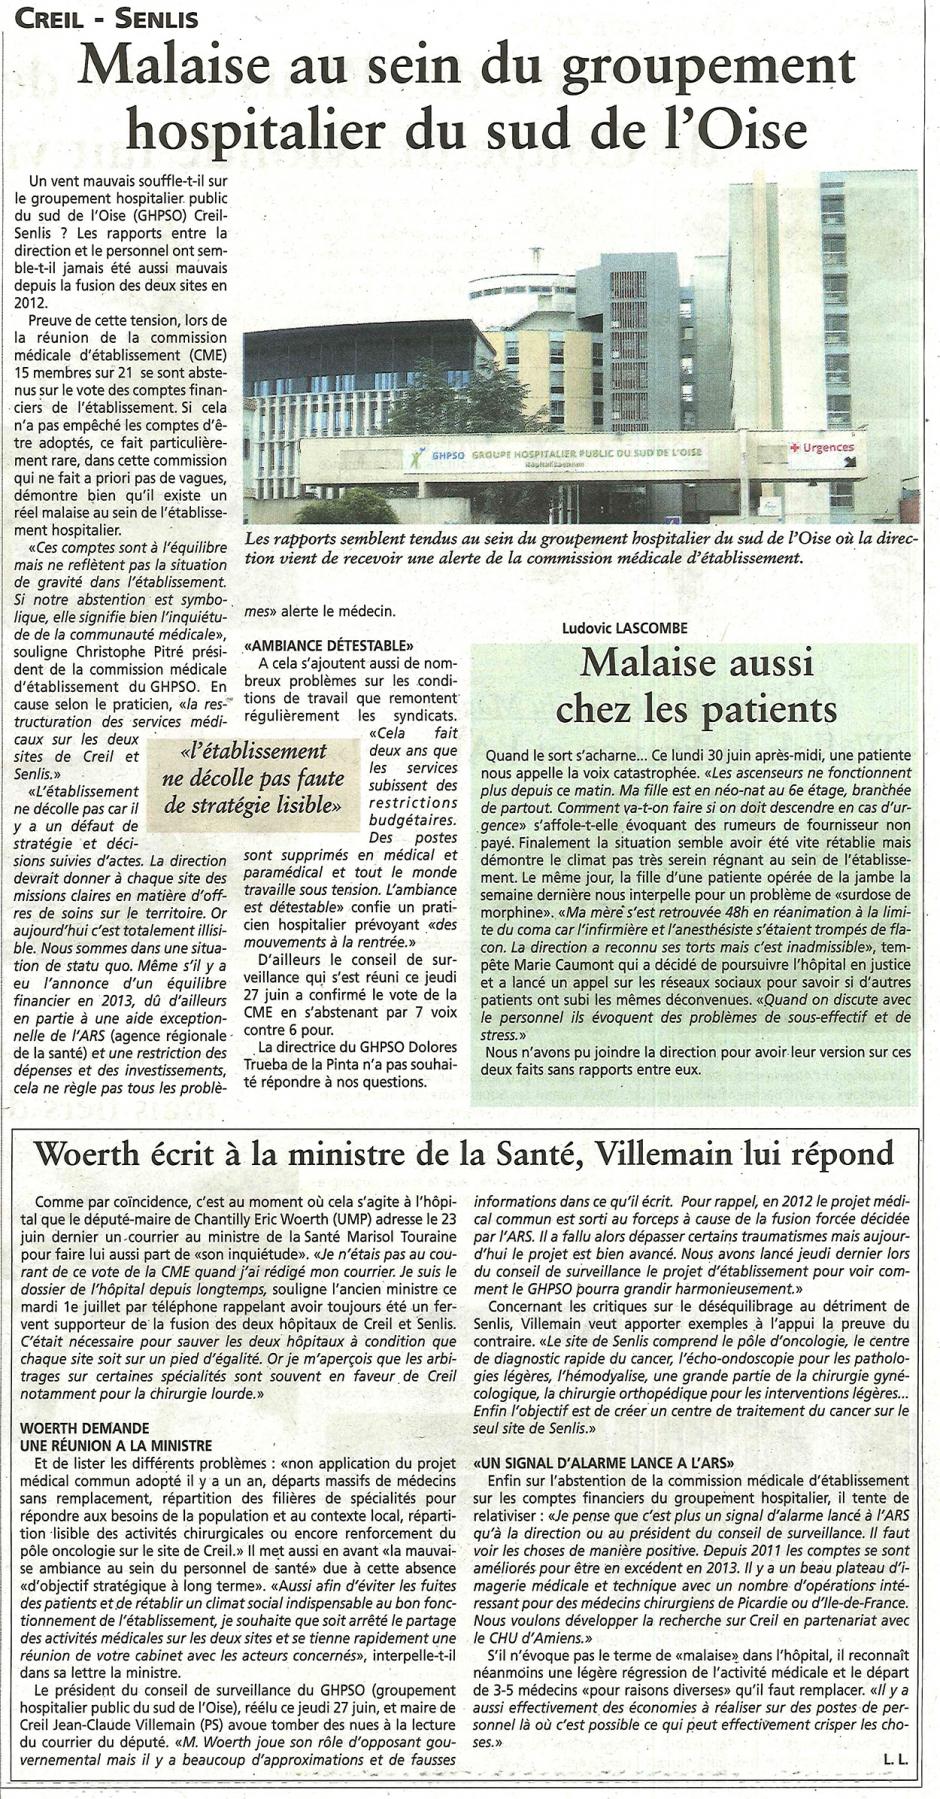 20140702-OH-Creil-Senlis-Malaise au sein du groupement hospitalier du sud de l'Oise [GHPSO]